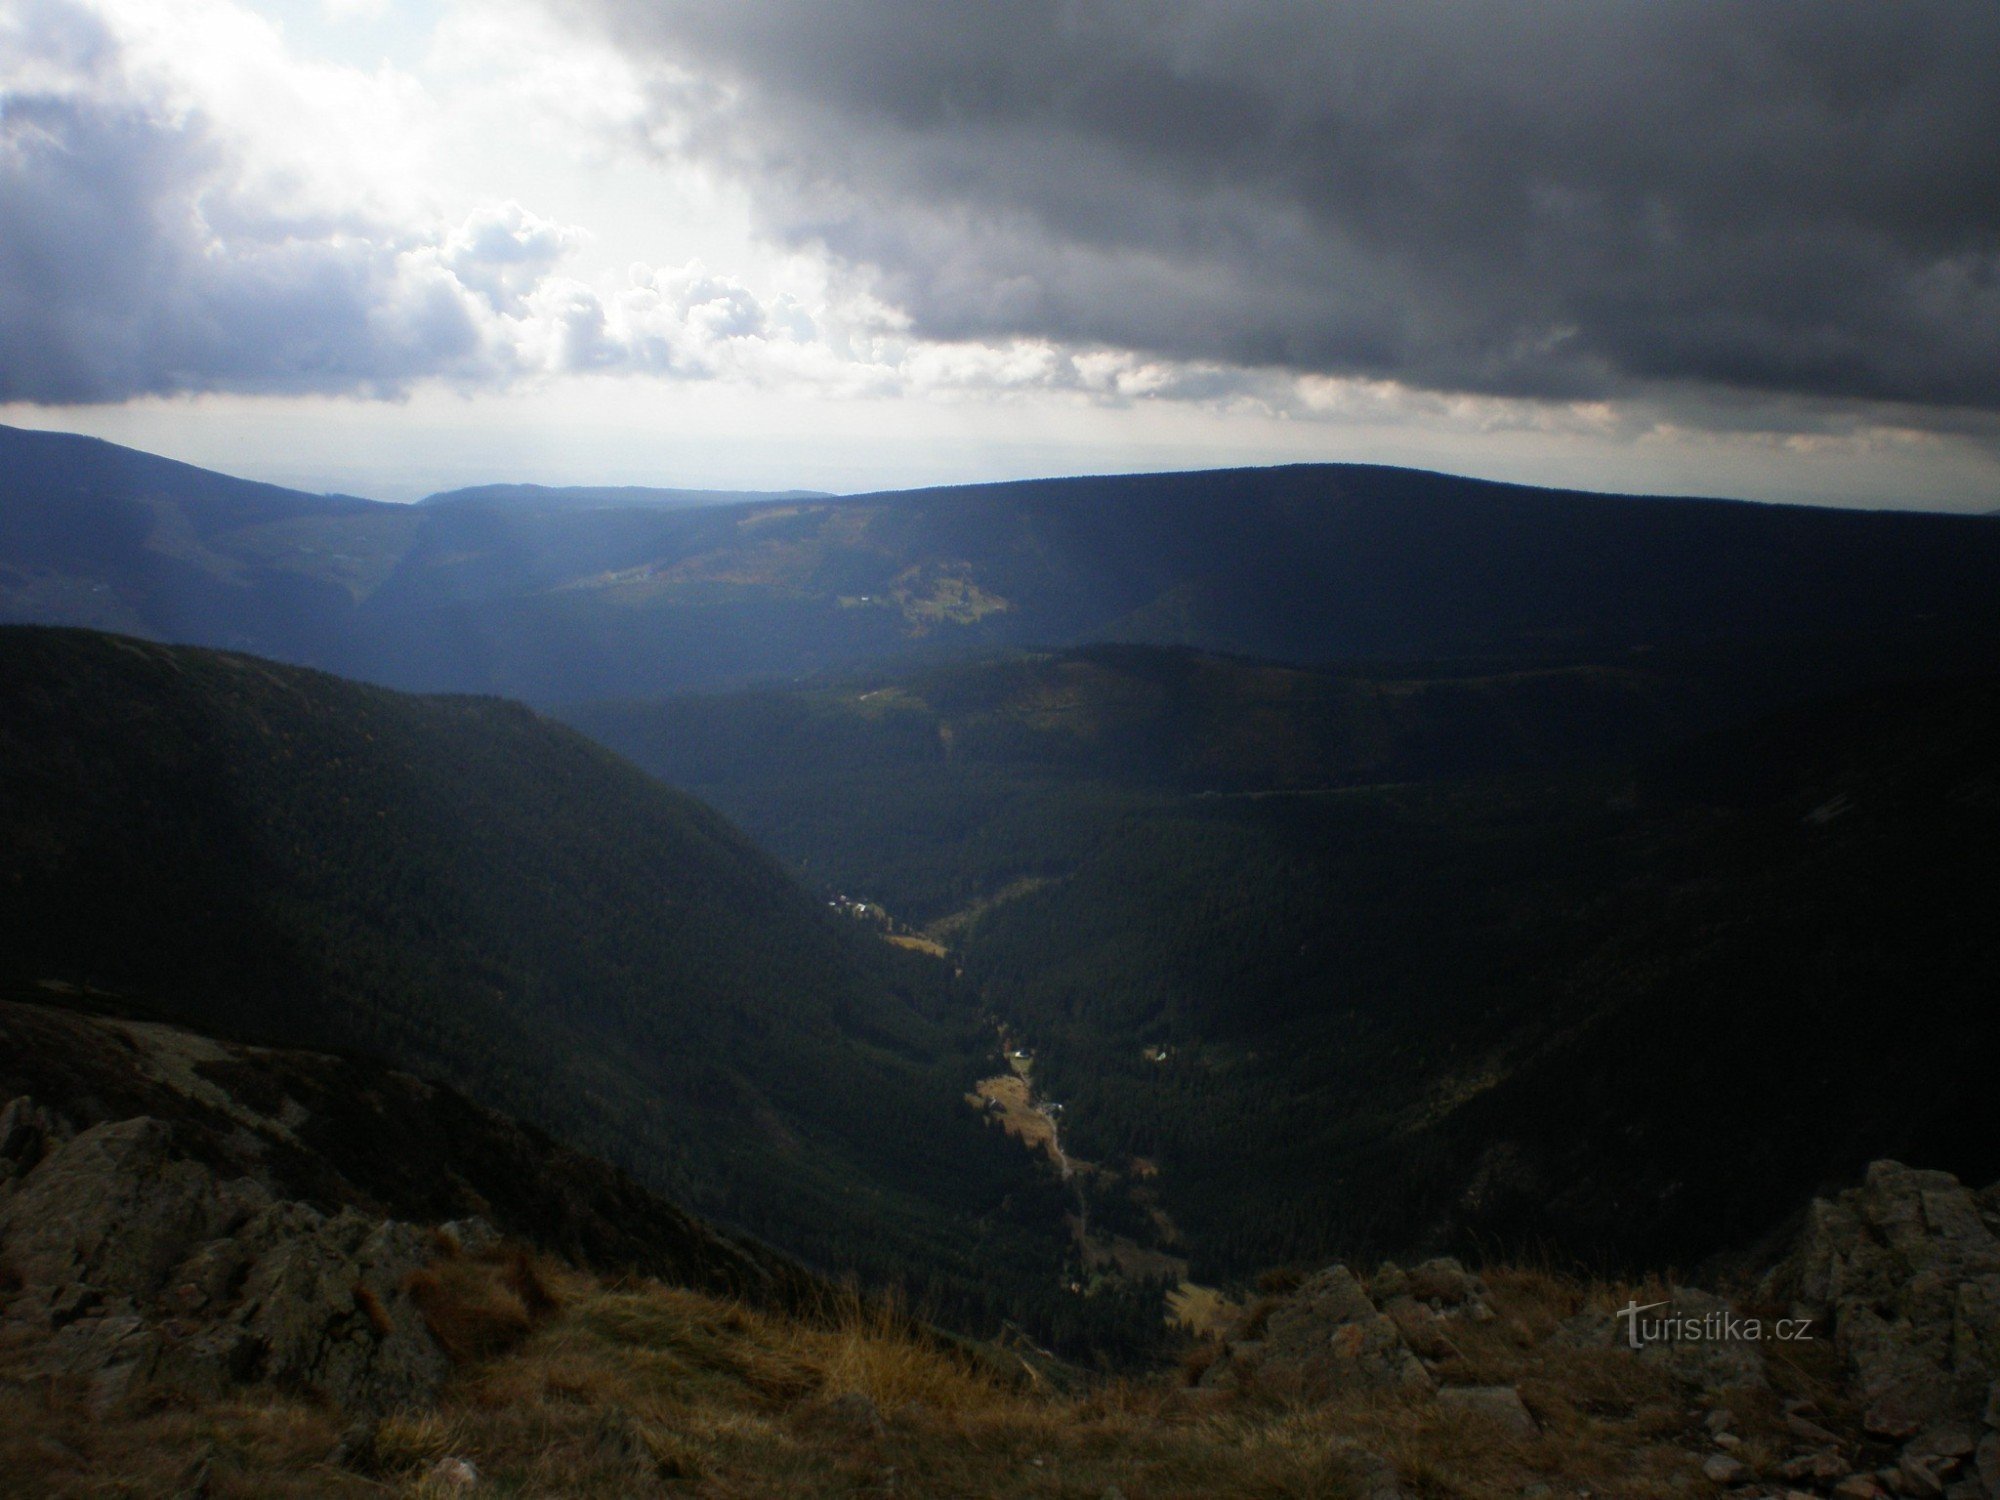 Θέα από τη Sněžka στο ορυχείο Giant